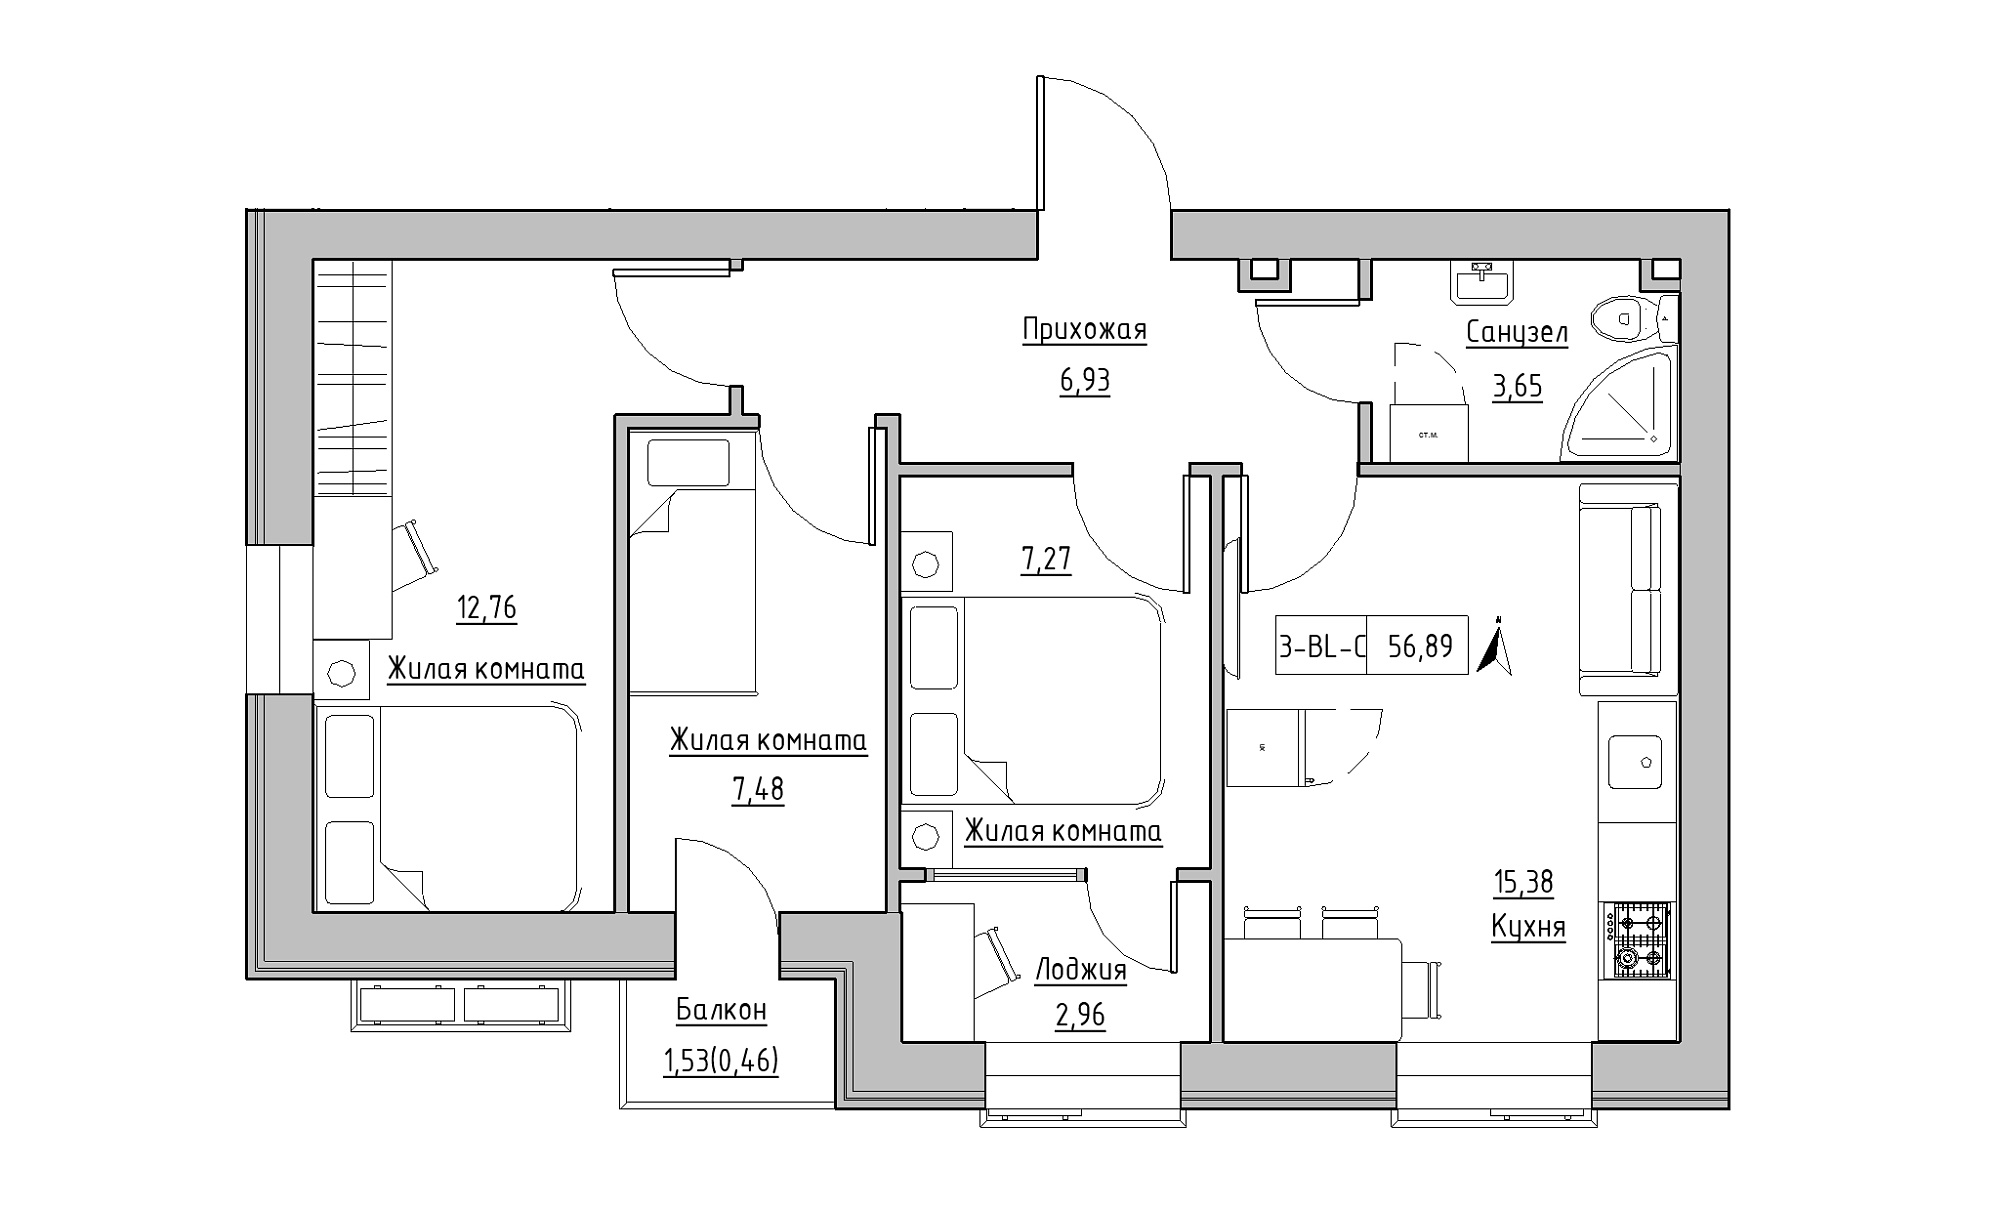 Планировка 3-к квартира площей 56.89м2, KS-016-03/0008.